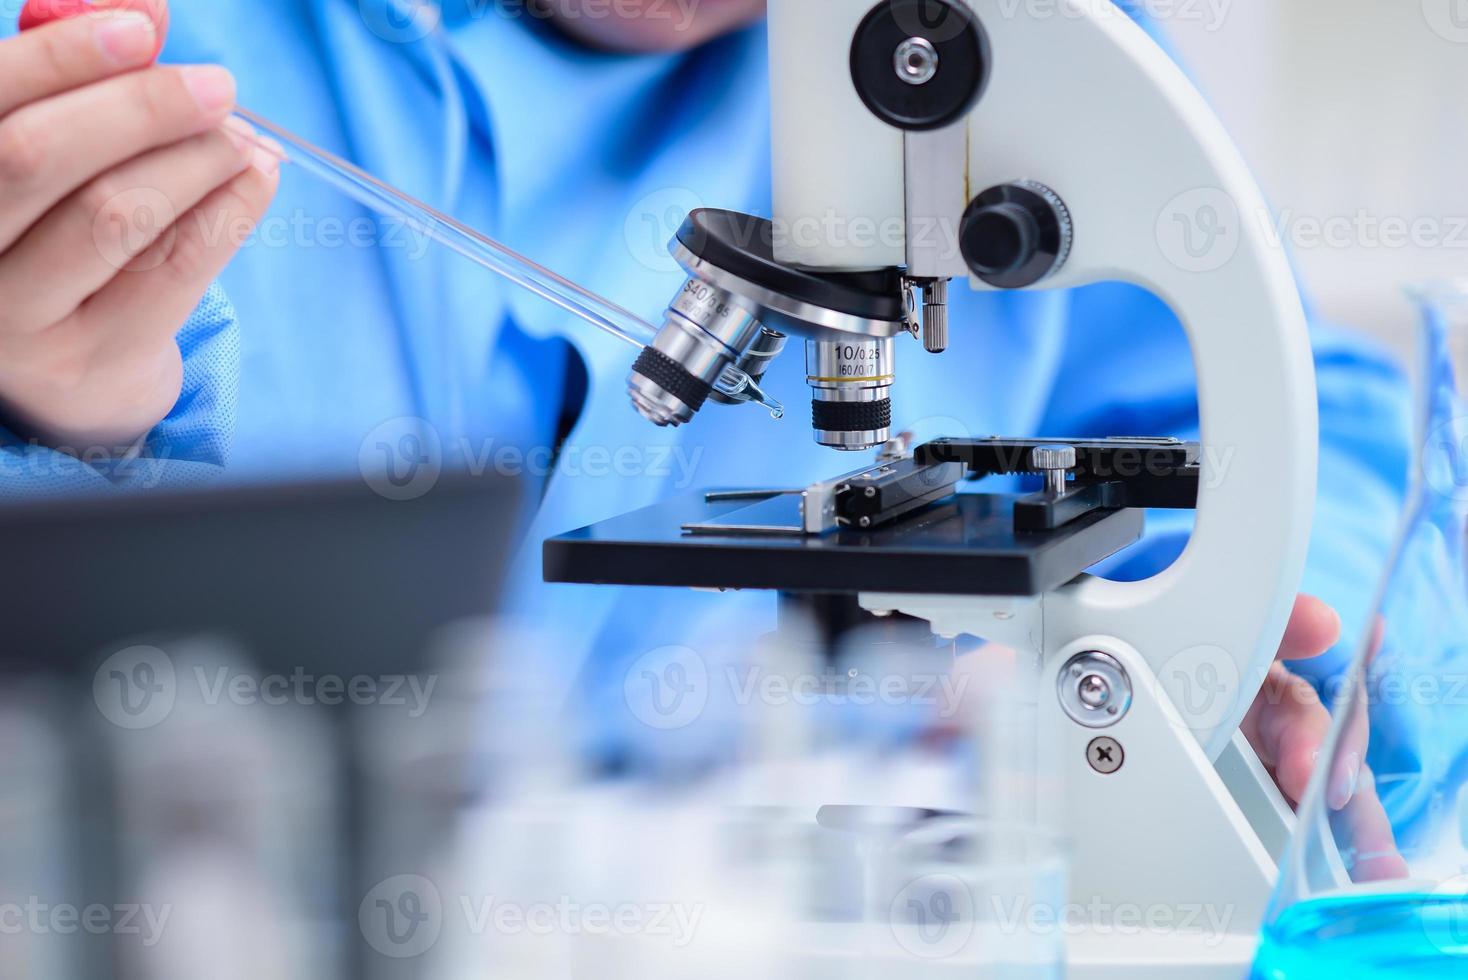 los científicos están preparando muestras para examinar las muestras con un microscopio en el laboratorio, dejando caer la solución en una placa de vidrio con una pipeta en el microscopio. ,concepto farmacéutico,inventó la vacuna foto